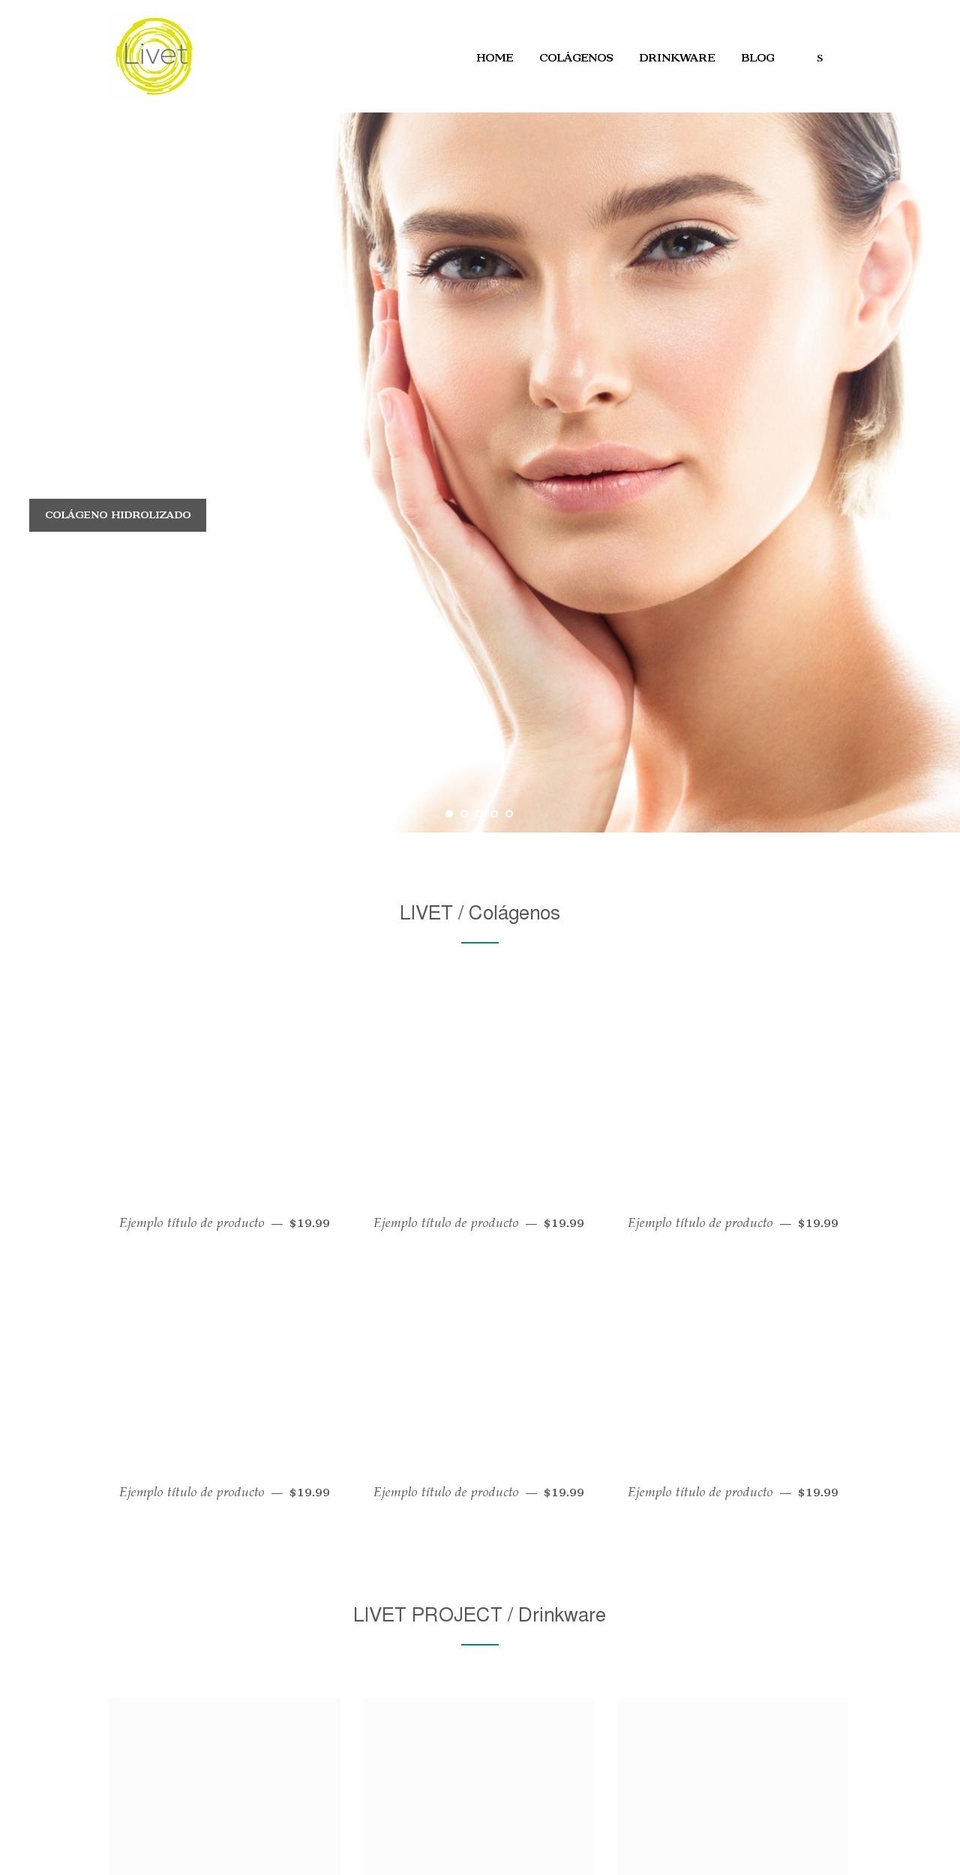 livetpro.com shopify website screenshot